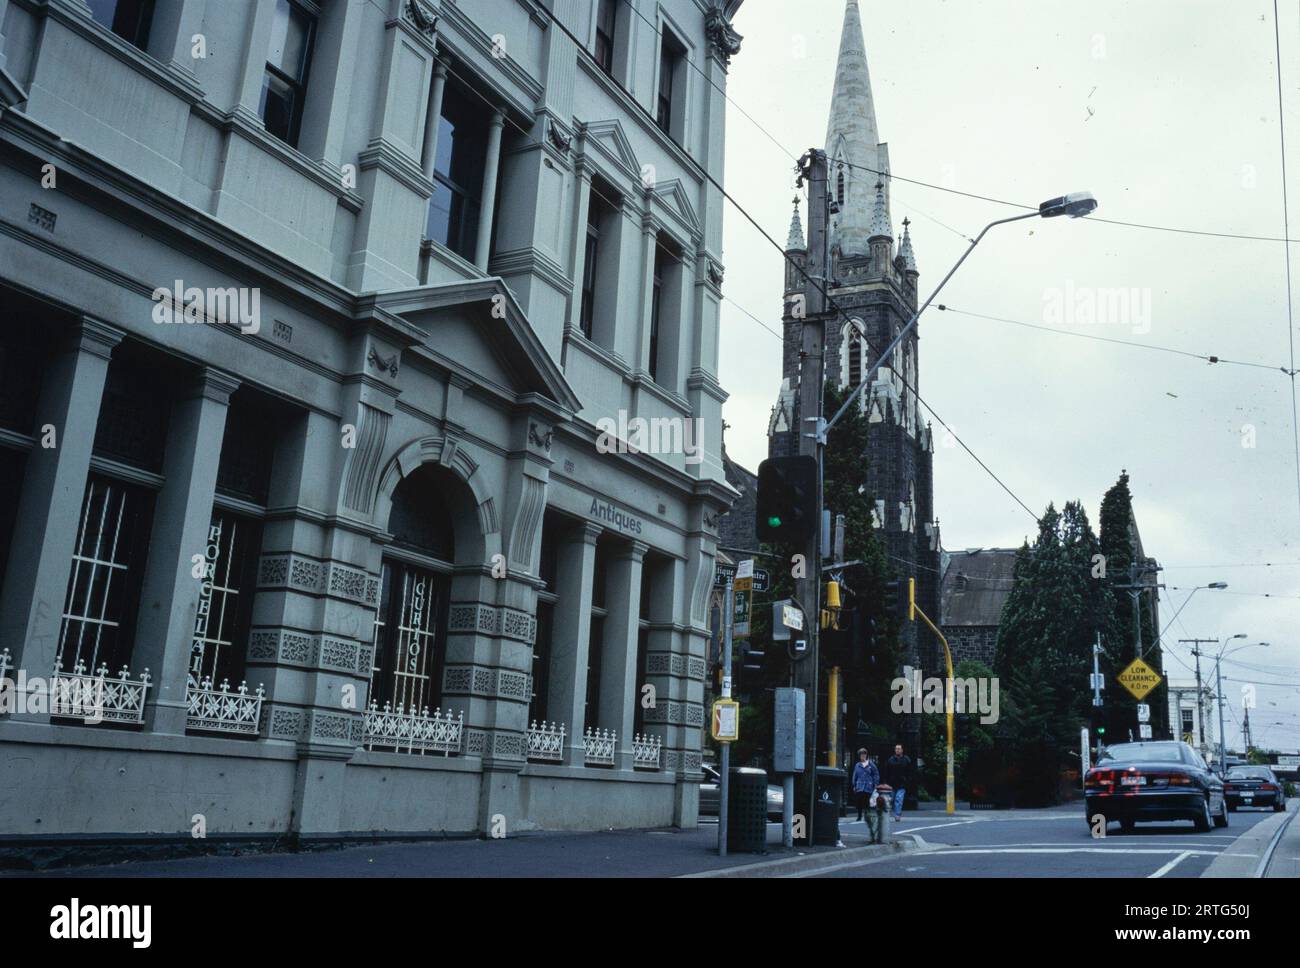 Melbourne, Australia Diciembre de 1999: Imagen icónica del paisaje urbano de Melbourne durante los años noventa, mostrando su vitalidad arquitectónica y urbana. Foto de stock